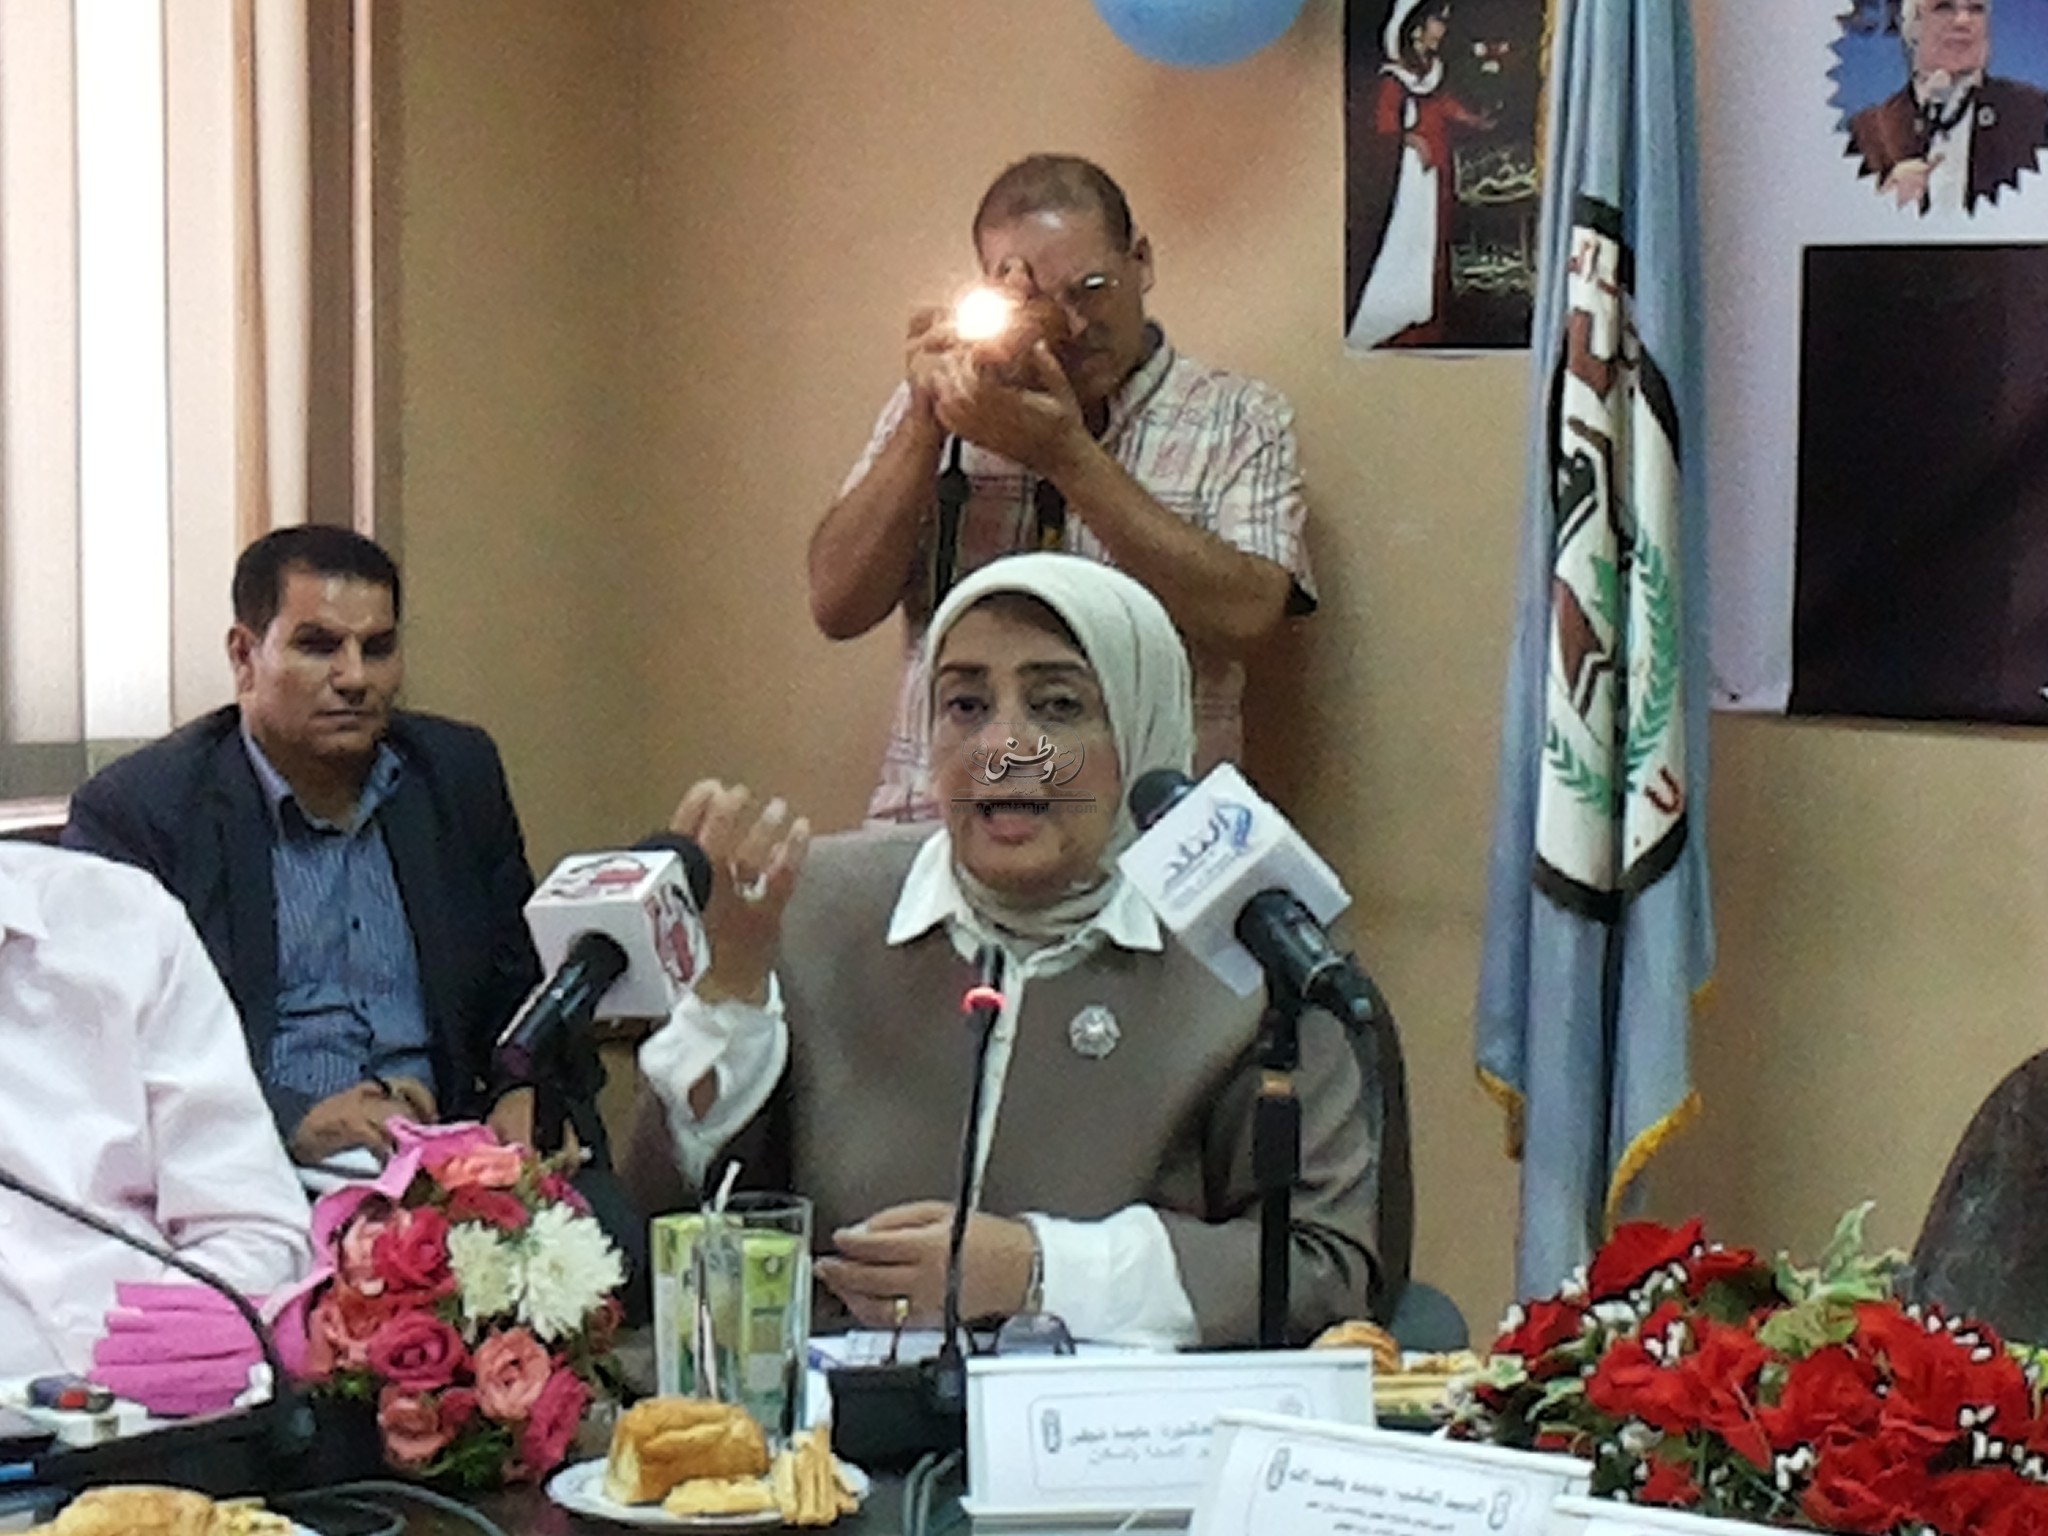 مايسة شوقي: ختان الإناث والزواج المبكر كارثة مصر الآن 